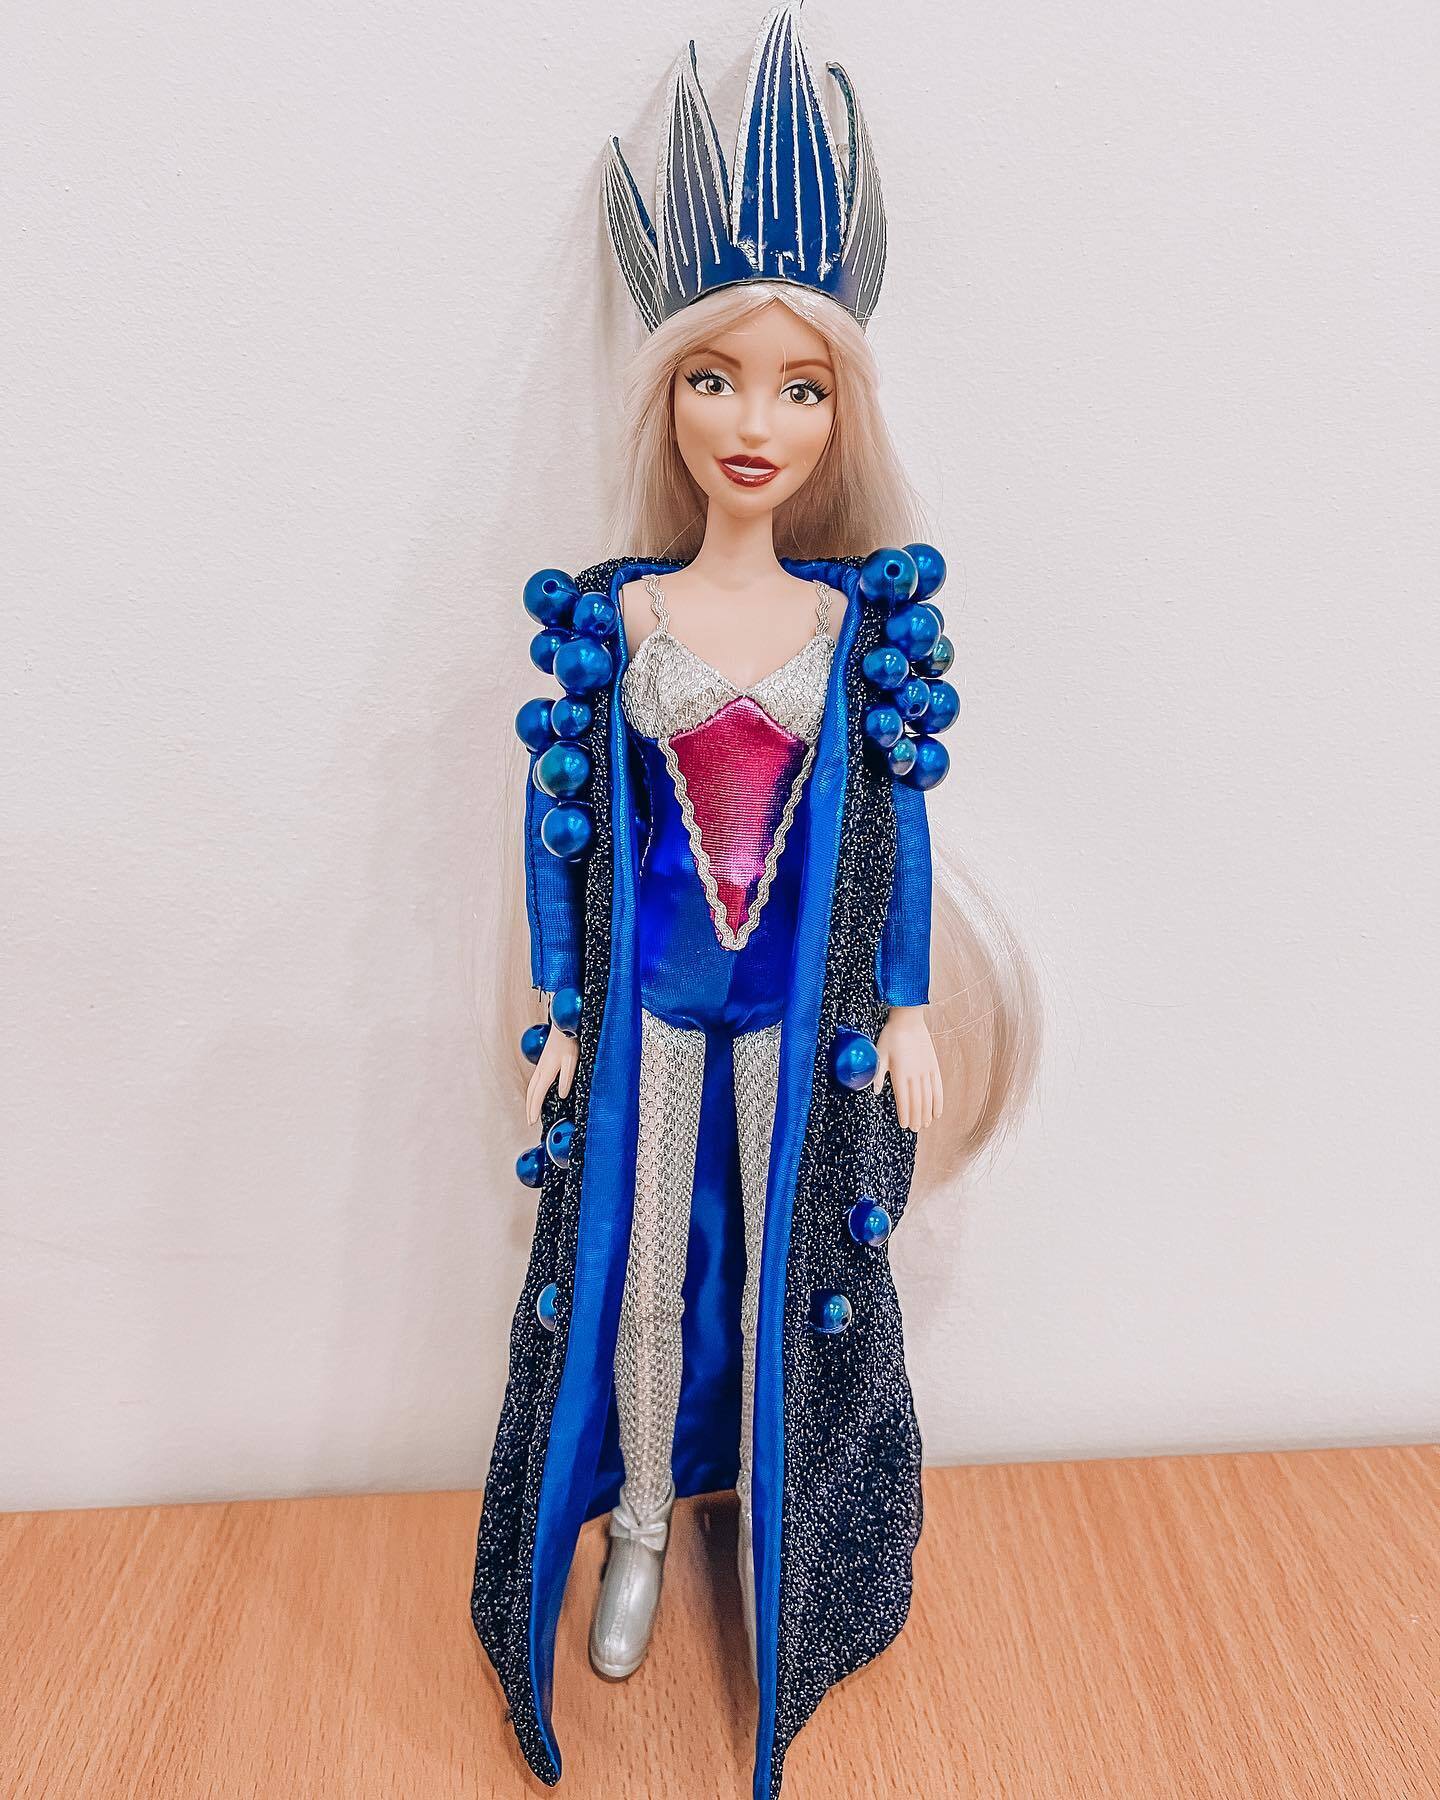 "Будут еще и петь моим голосом": Полякова создала коллекцию кукол в честь себя. Фото